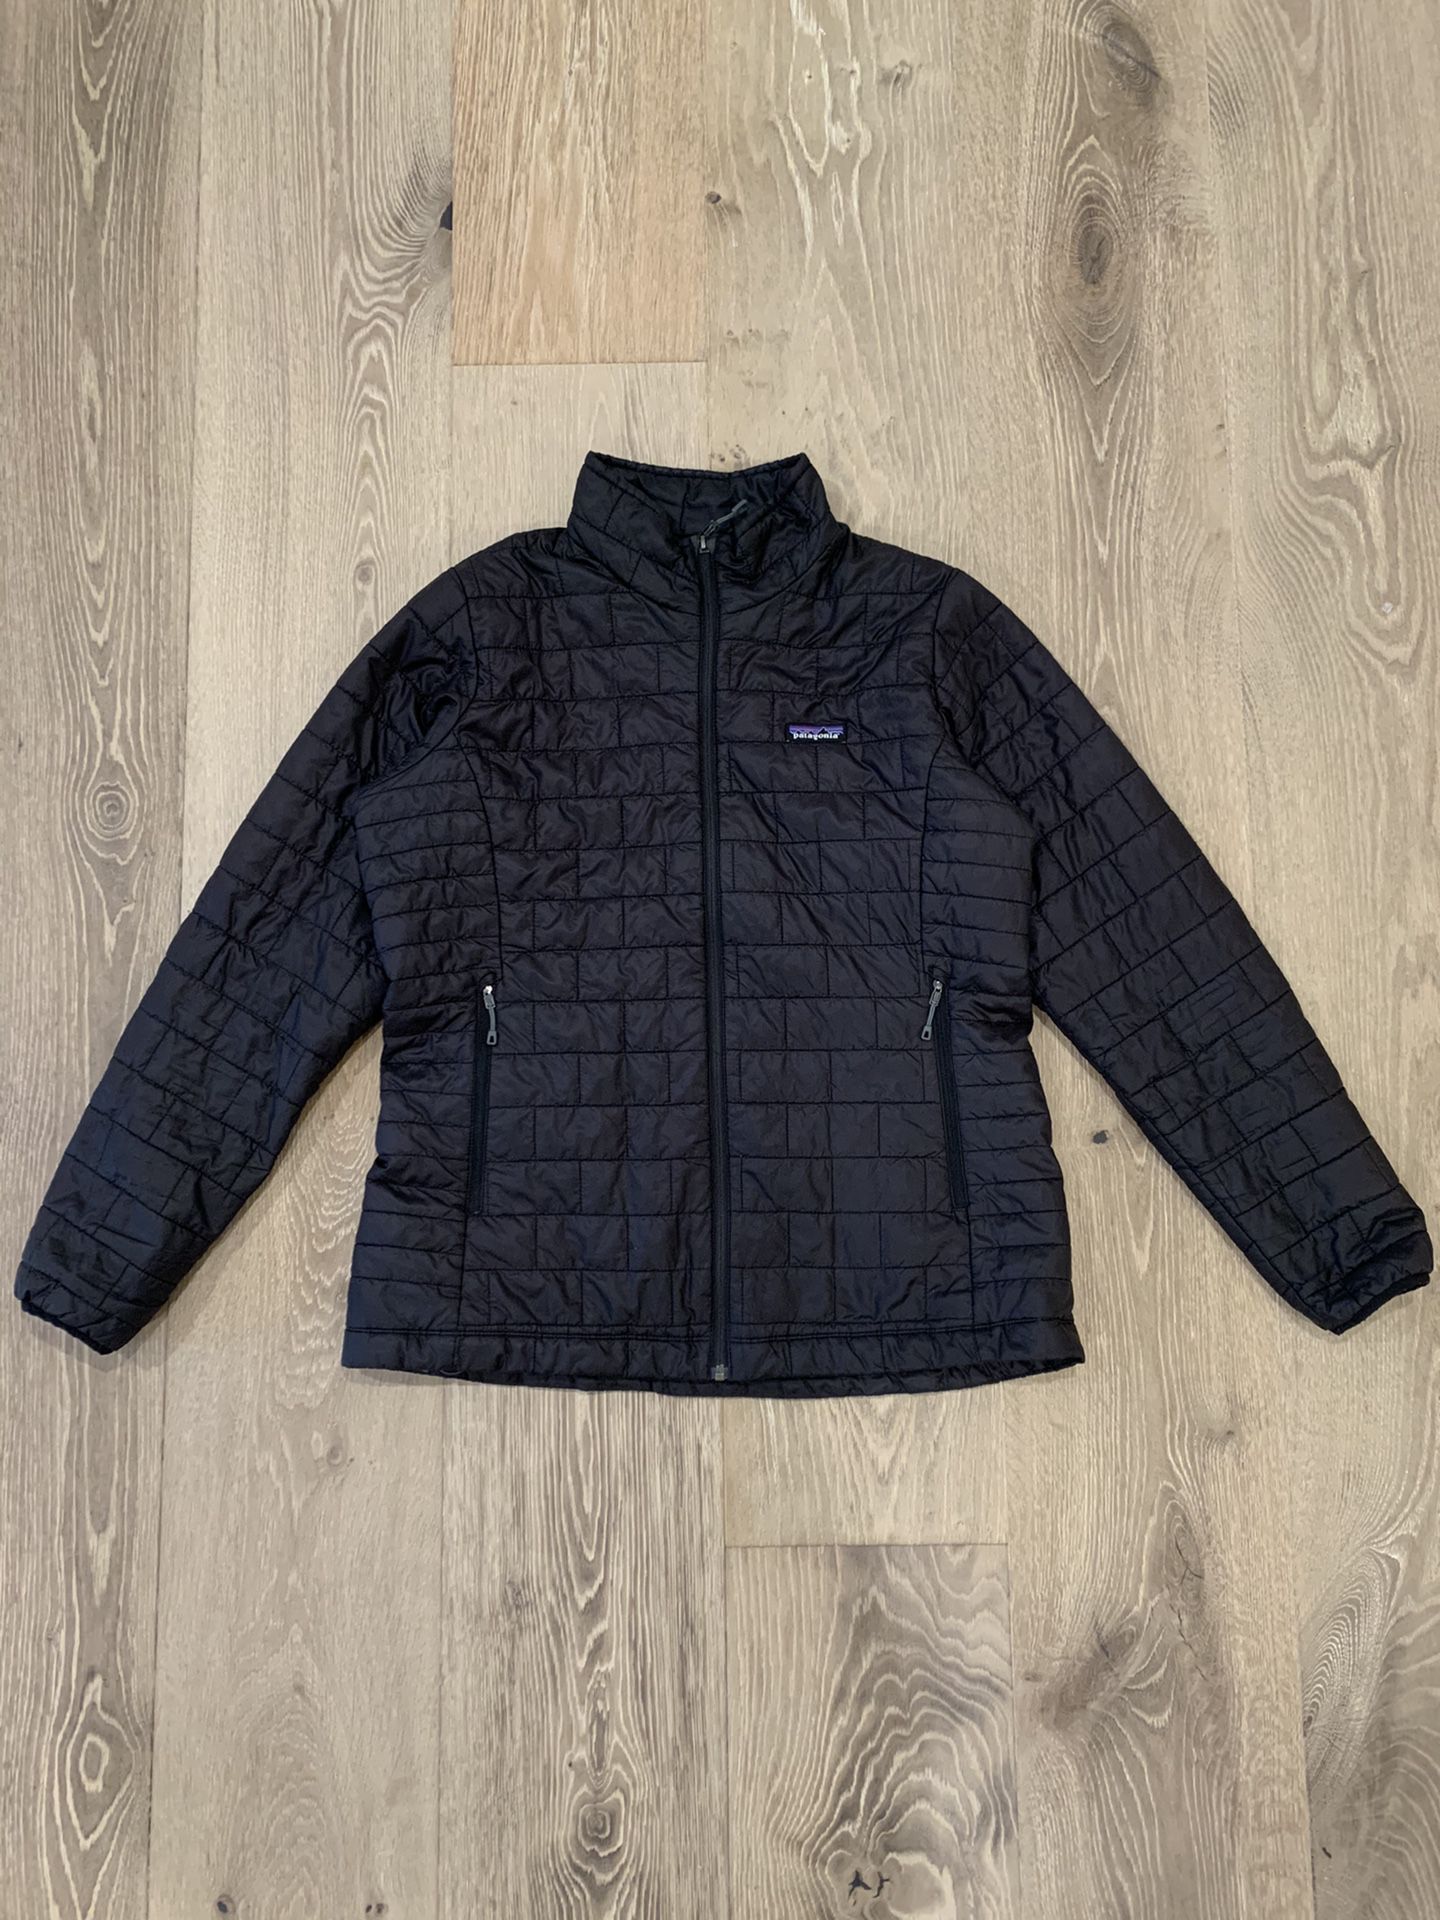 Patagonia Women’s Down Jacket - Size XL - Black